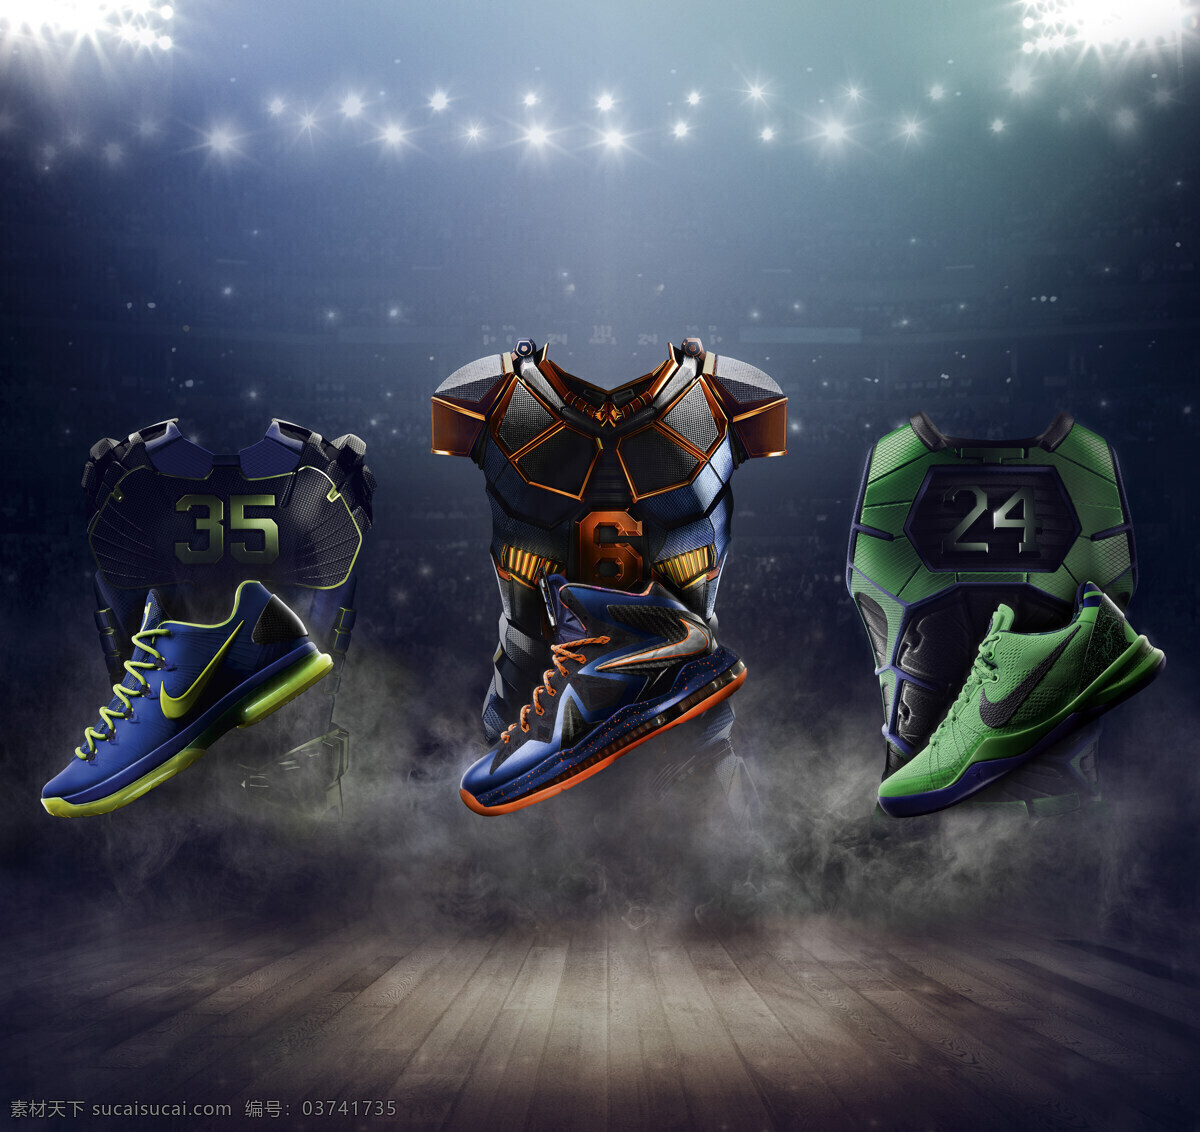 耐克篮球鞋 耐克 耐克运动鞋 nike 运动 健身 动感 鞋子设计 服饰 篮球鞋